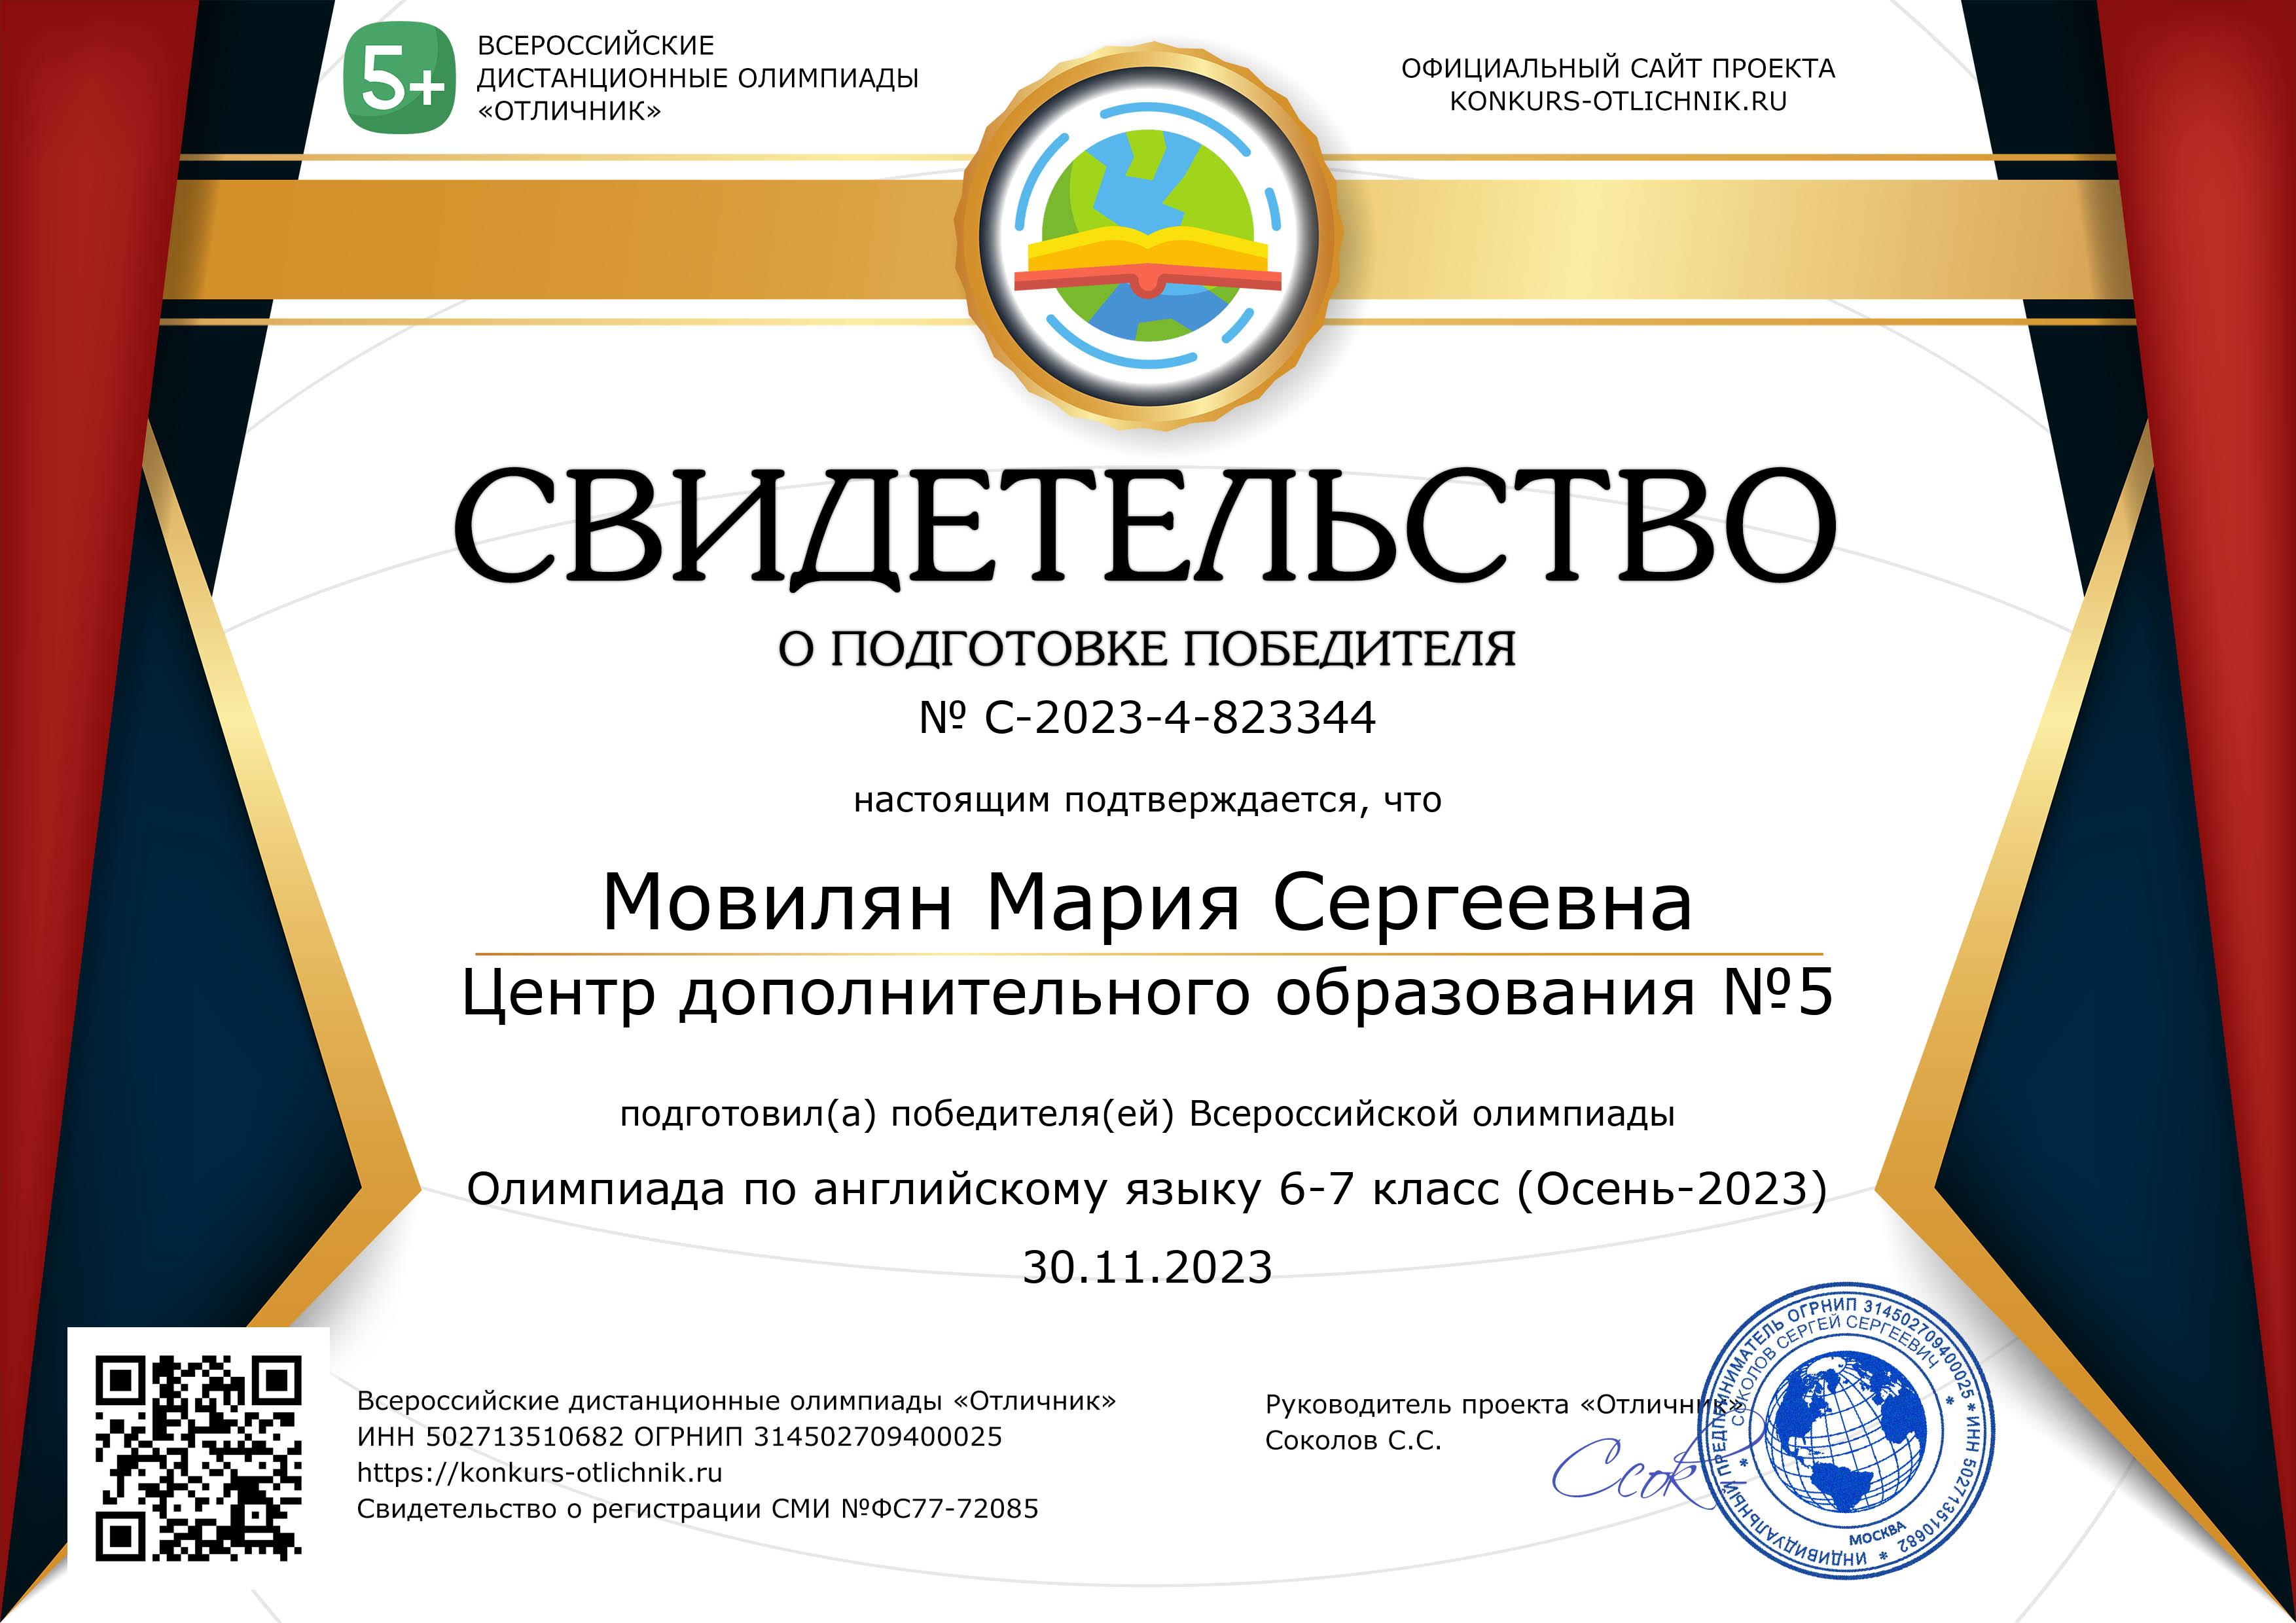 823344 certificate